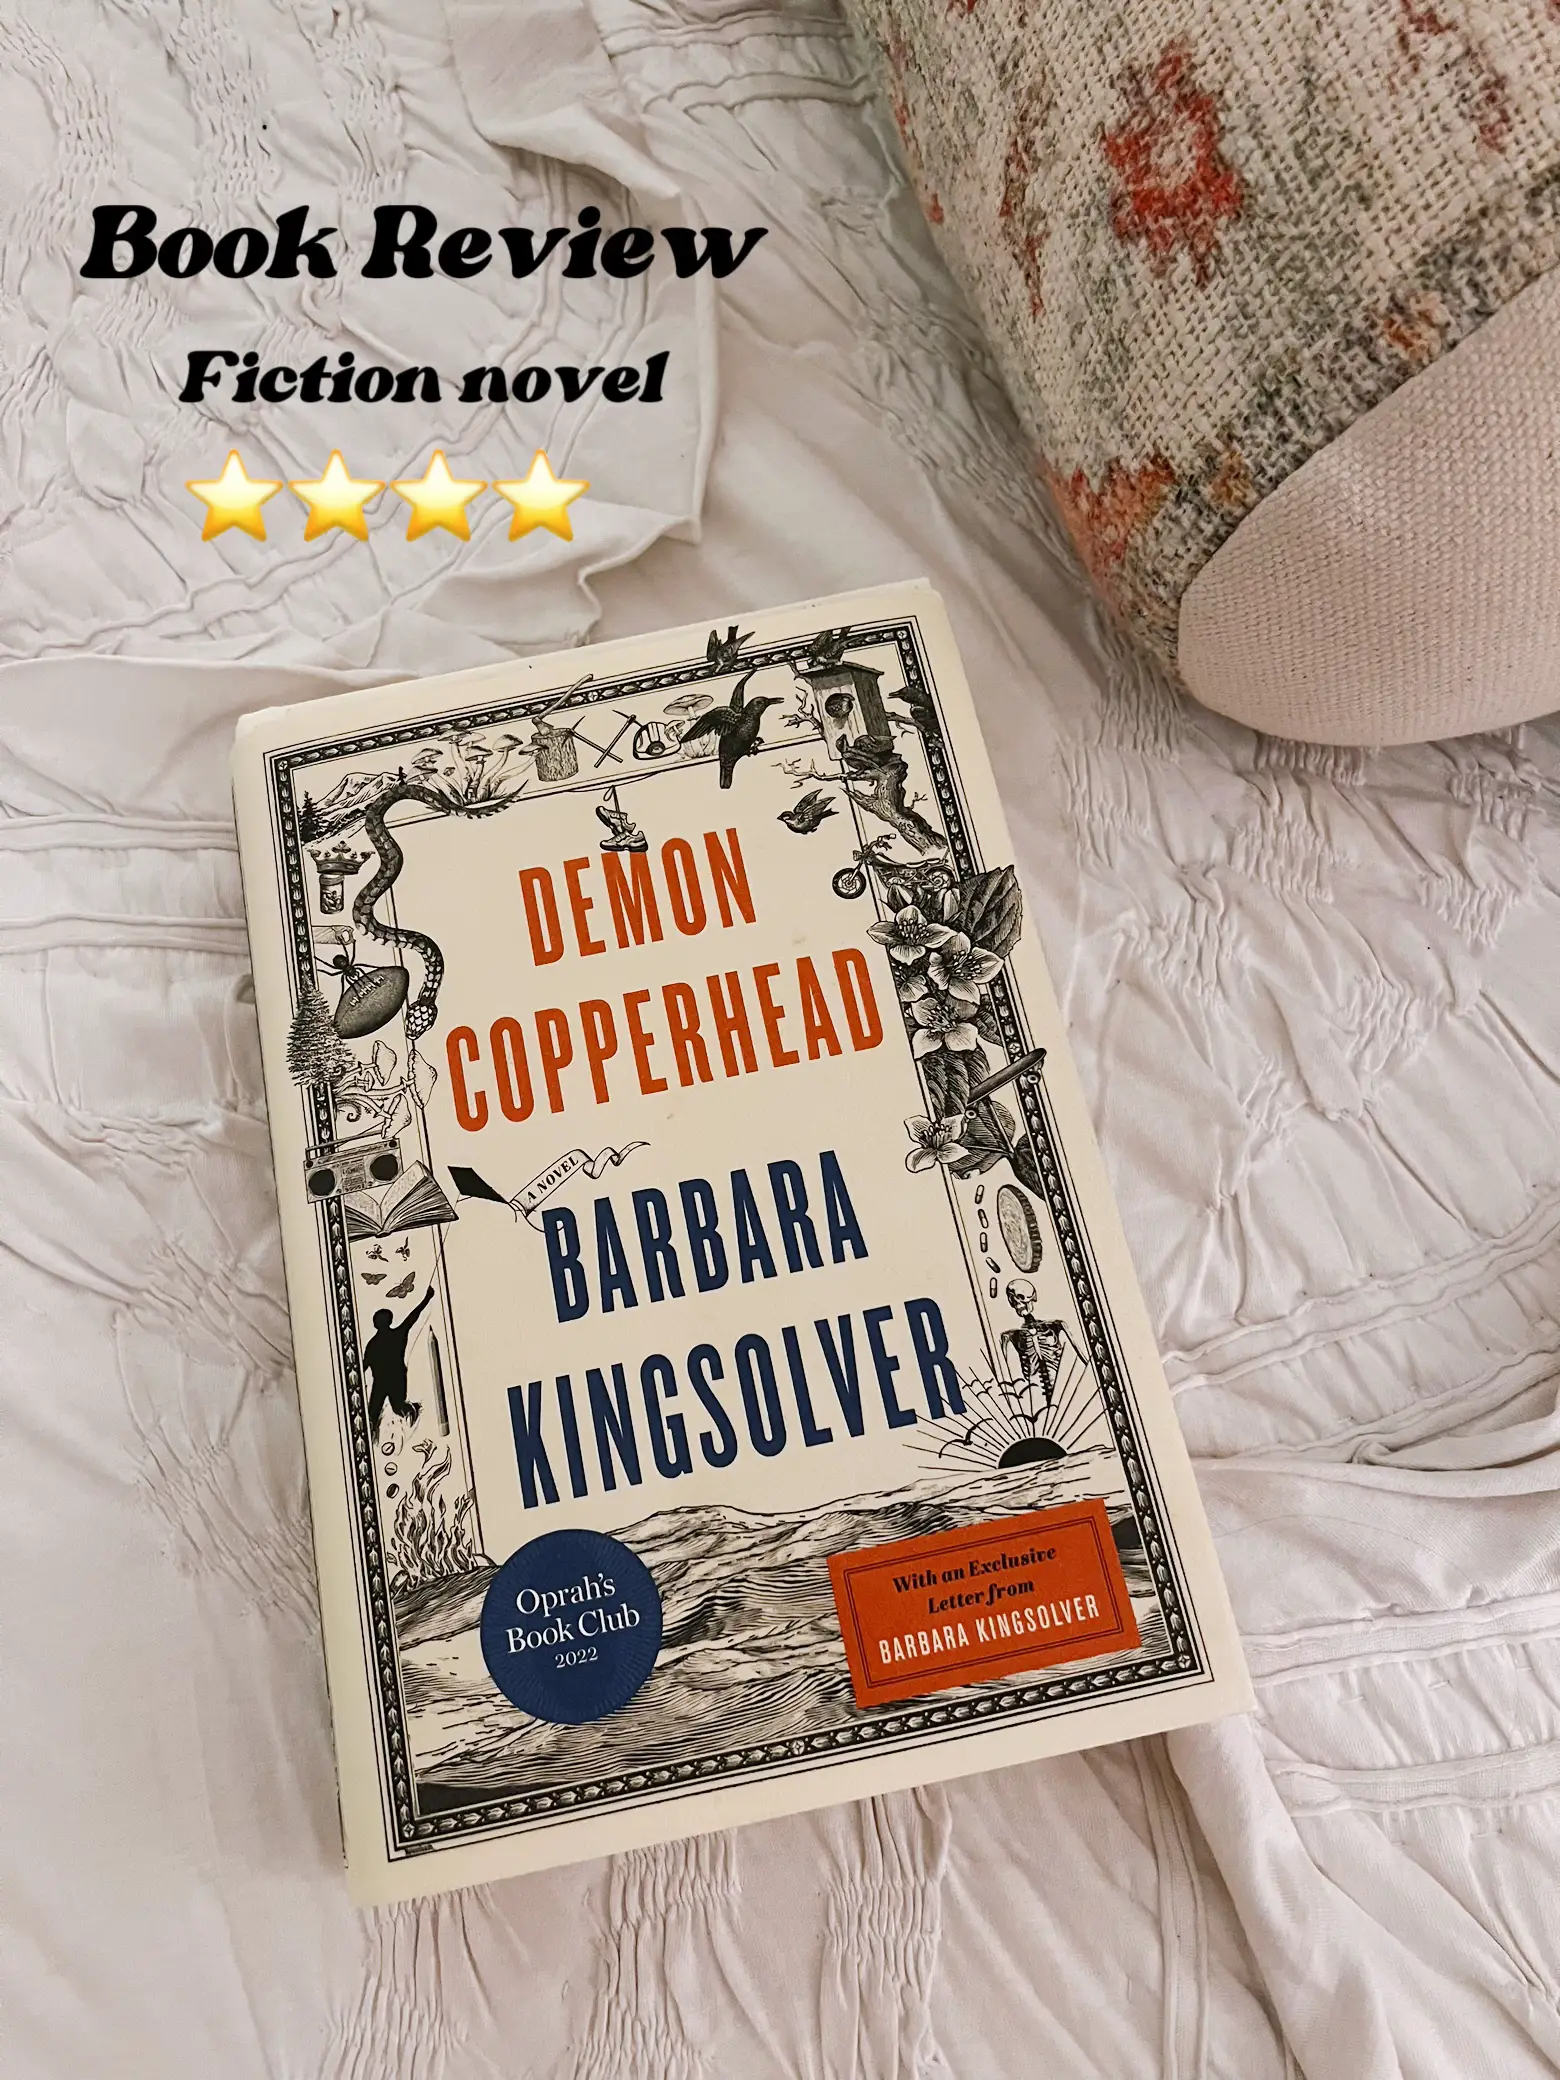 Demon Copperhead: A must-read for fiction fans - Lemon8 Search